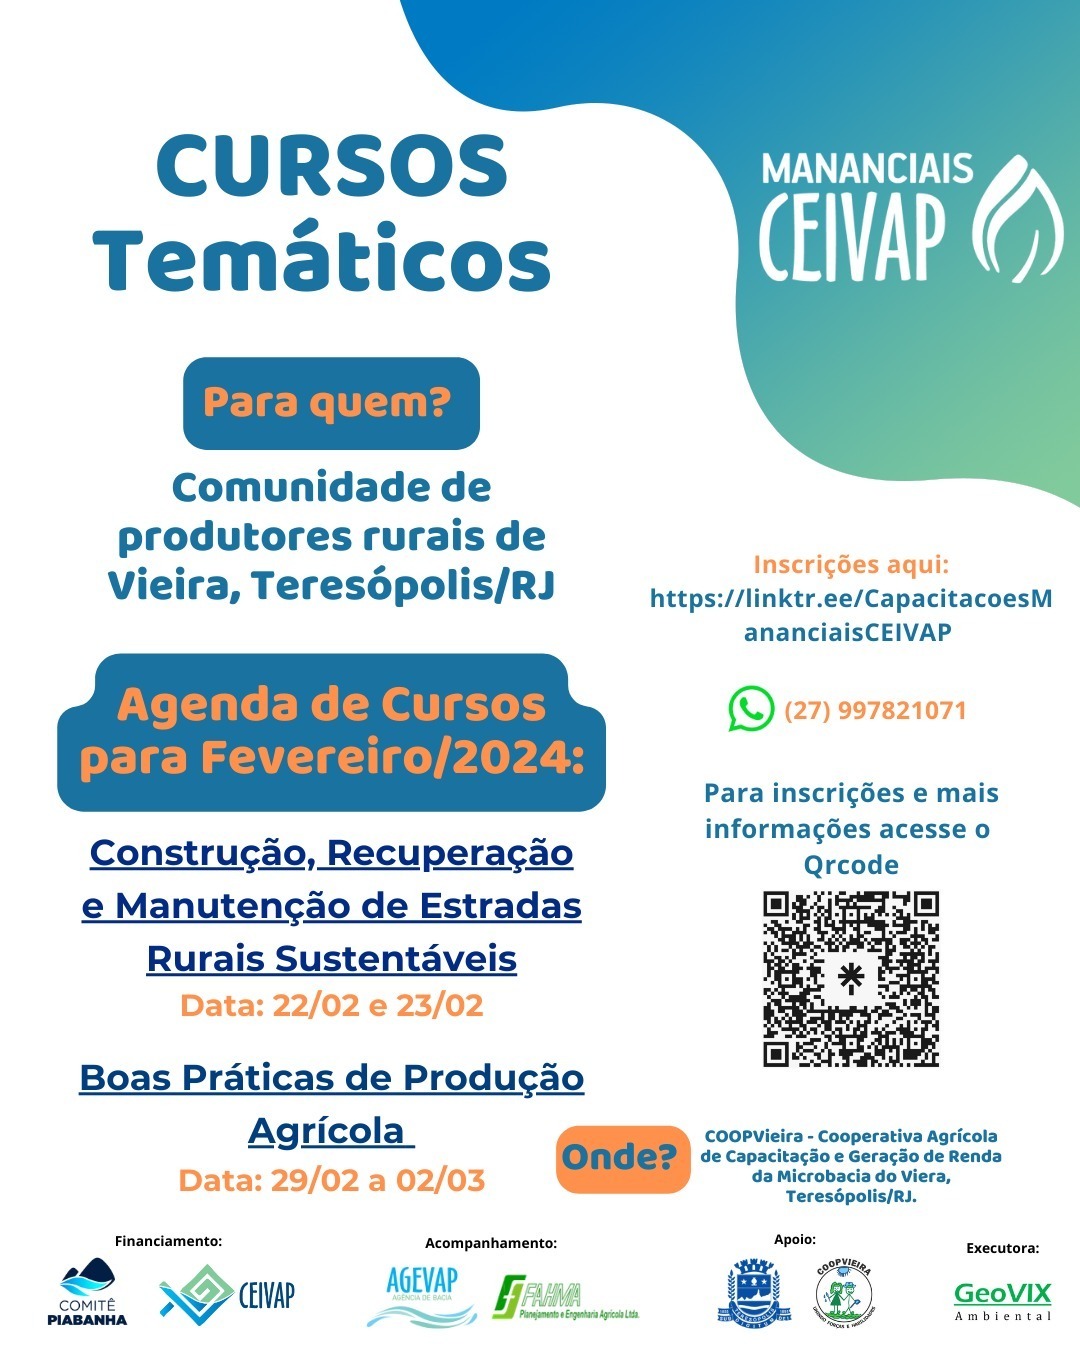 PROGRAMA MANANCIAIS: Prefeitura é parceira do CEIVAP e Comitê Piabanha na promoção de capacitação em Vieira, no interior